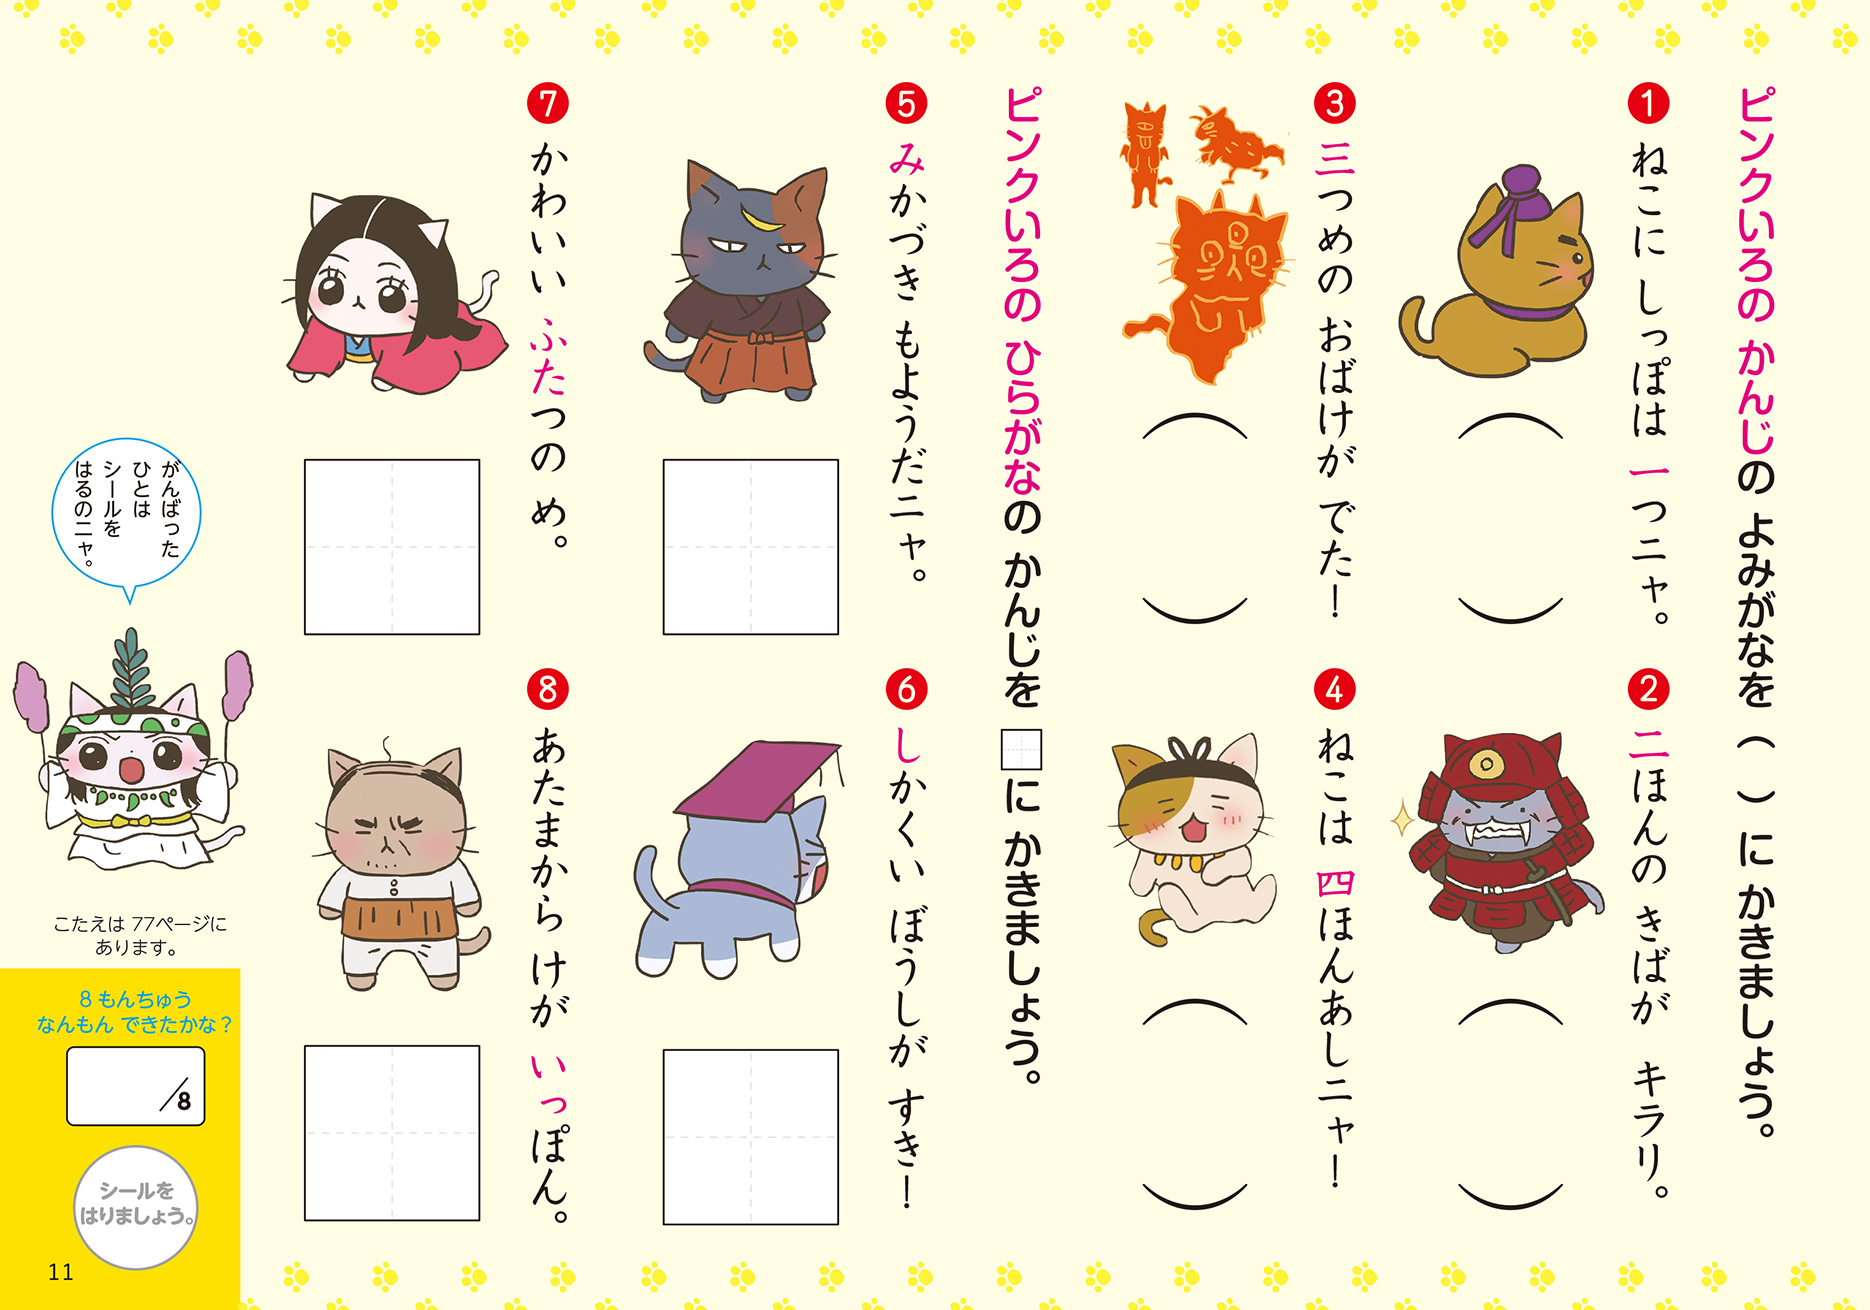 ねこねこ漢字ドリル で楽しく漢字を覚えよう ついに出た 猫だらけのオモシロ漢字ドリル決定版を発売 株式会社実業之日本社のプレスリリース